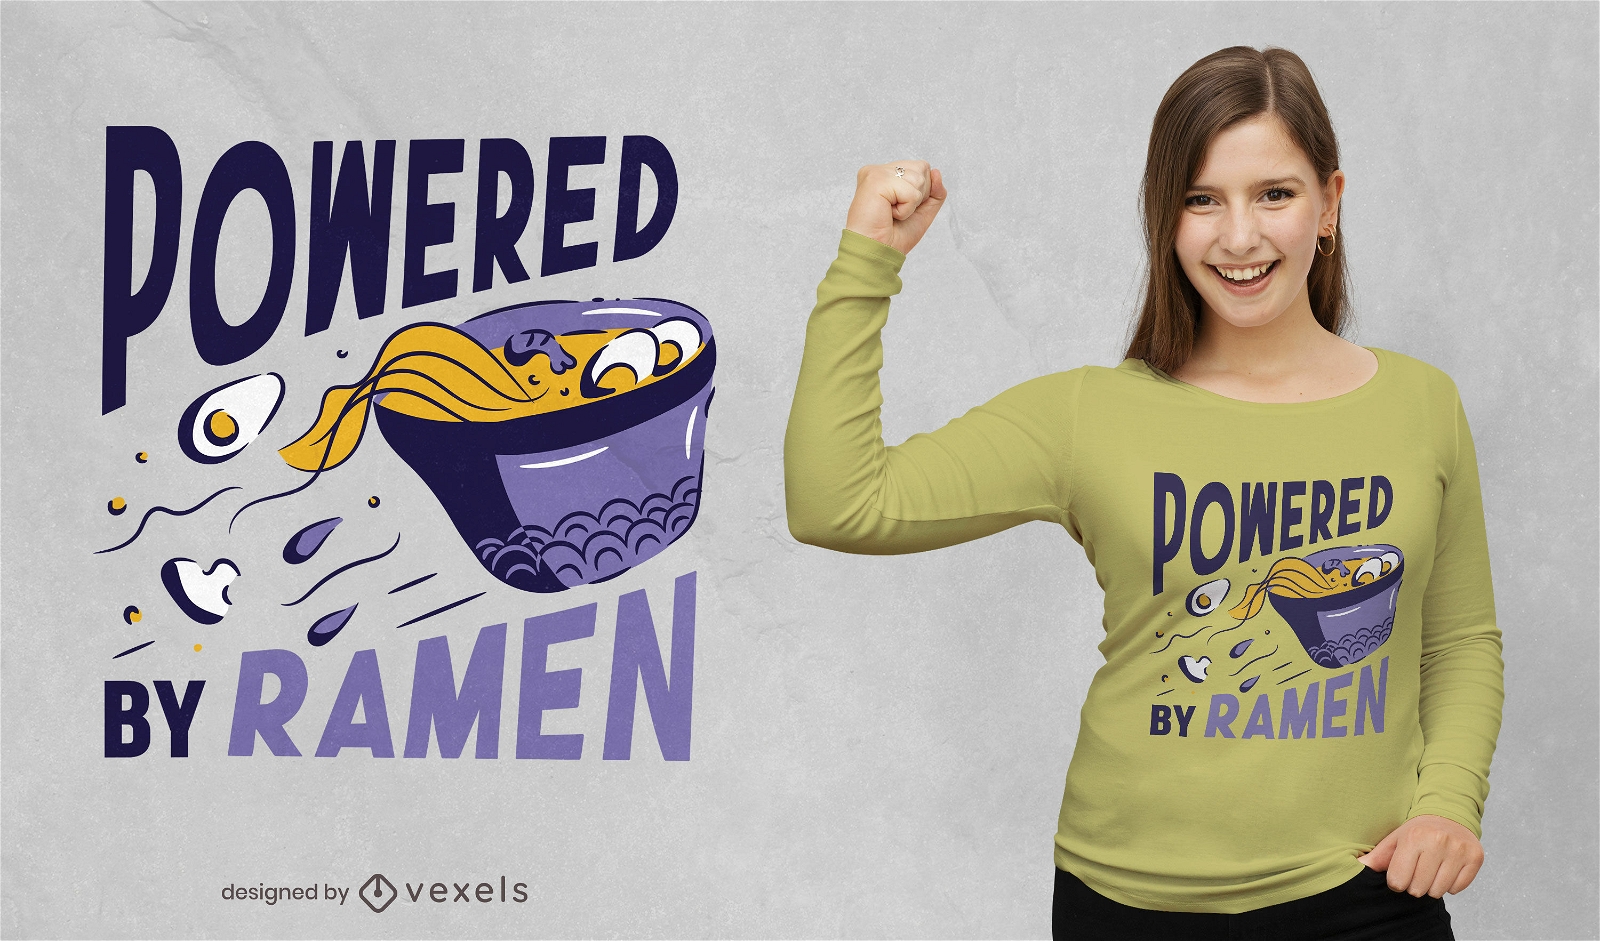 Powered by ramen t-shirt design